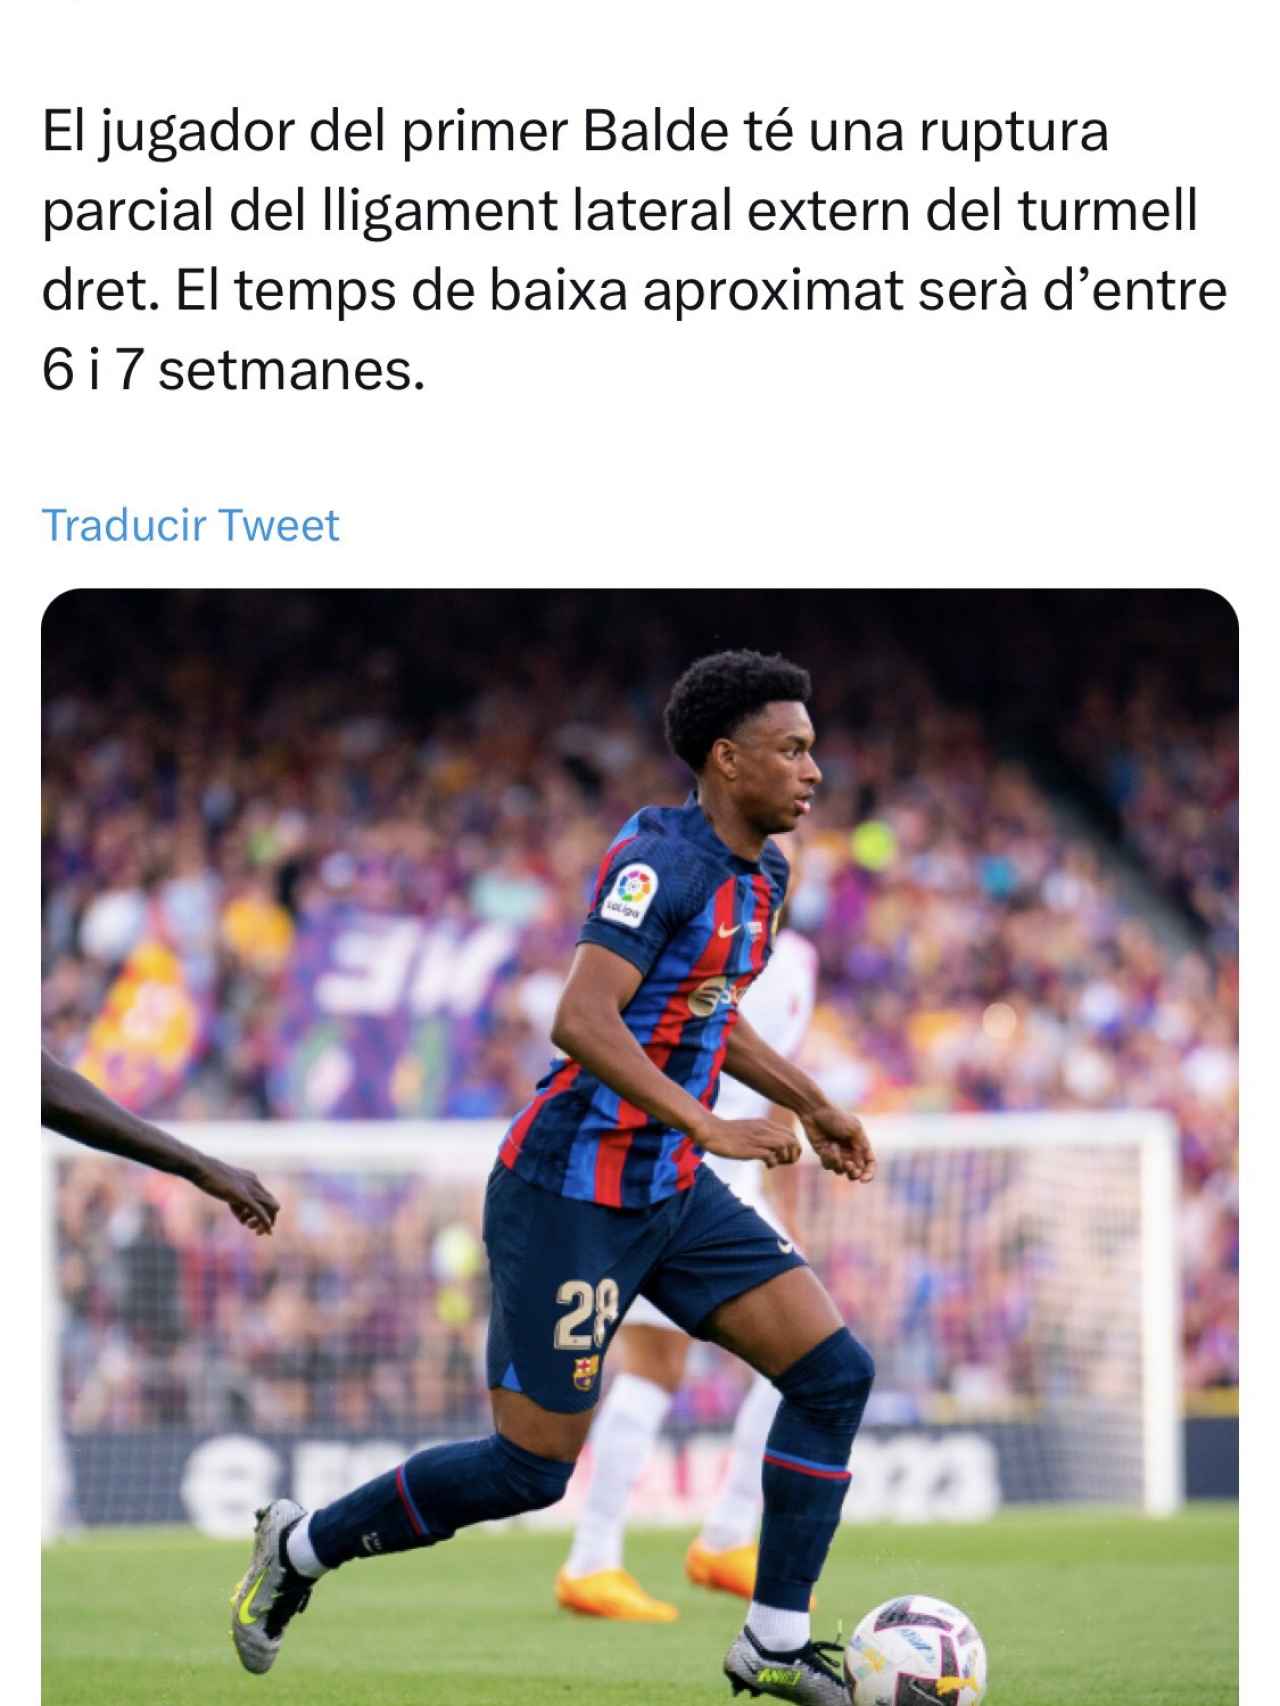 El comunicado oficial del Barça sobre la lesión de Alejandro Balde / FCB